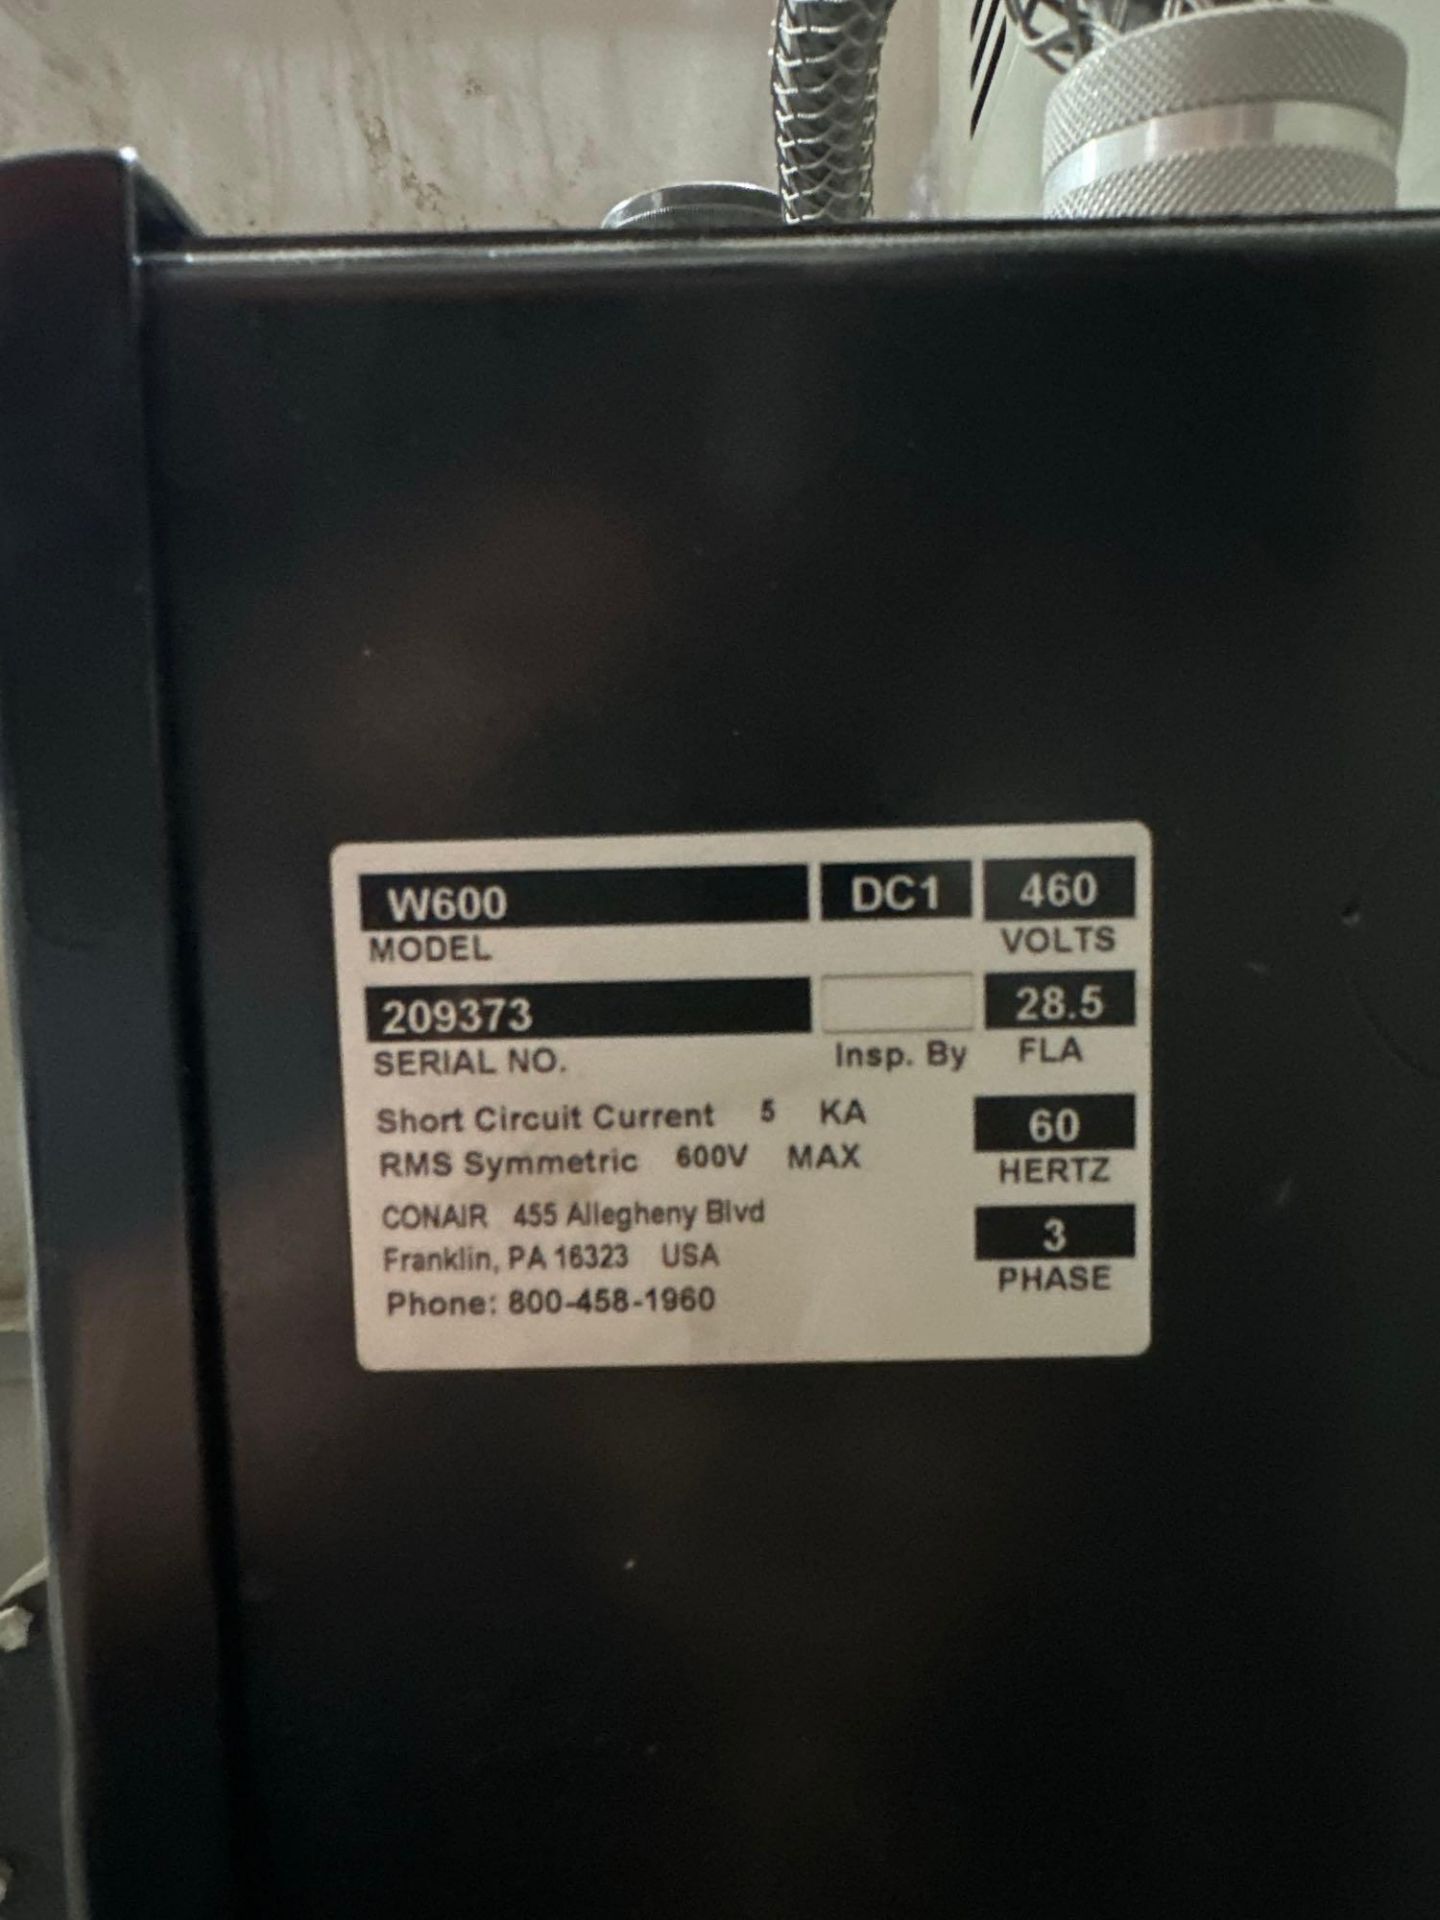 Conair W600 Dryer, s/n 209373 - Image 3 of 3